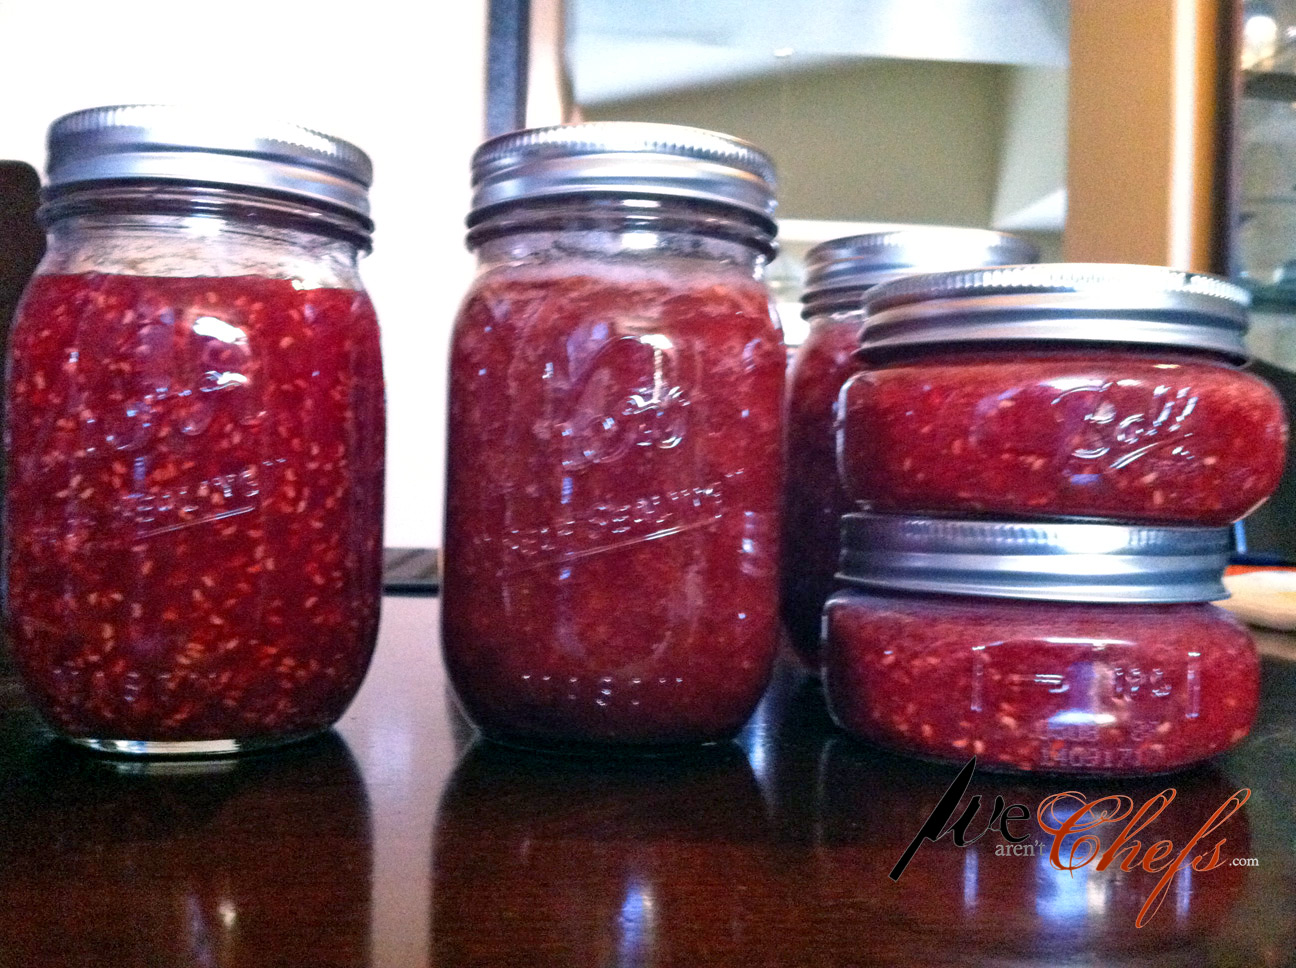 More homemade jam